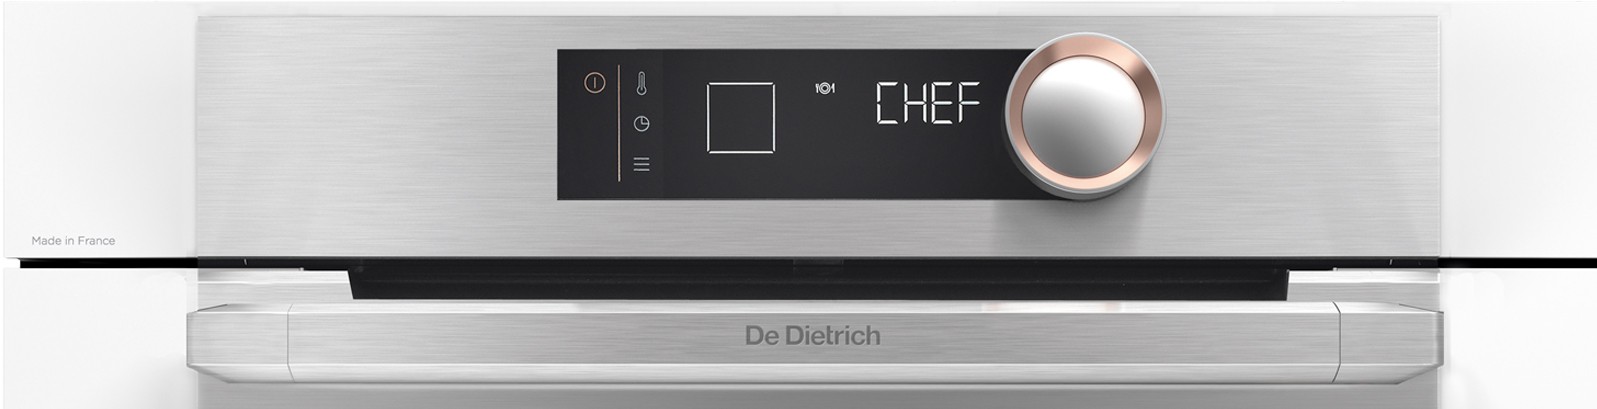 DE DIETRICH Four encastrable pyrolyse Basse temperature Mode Chef 73L Blanc - DOP8360W